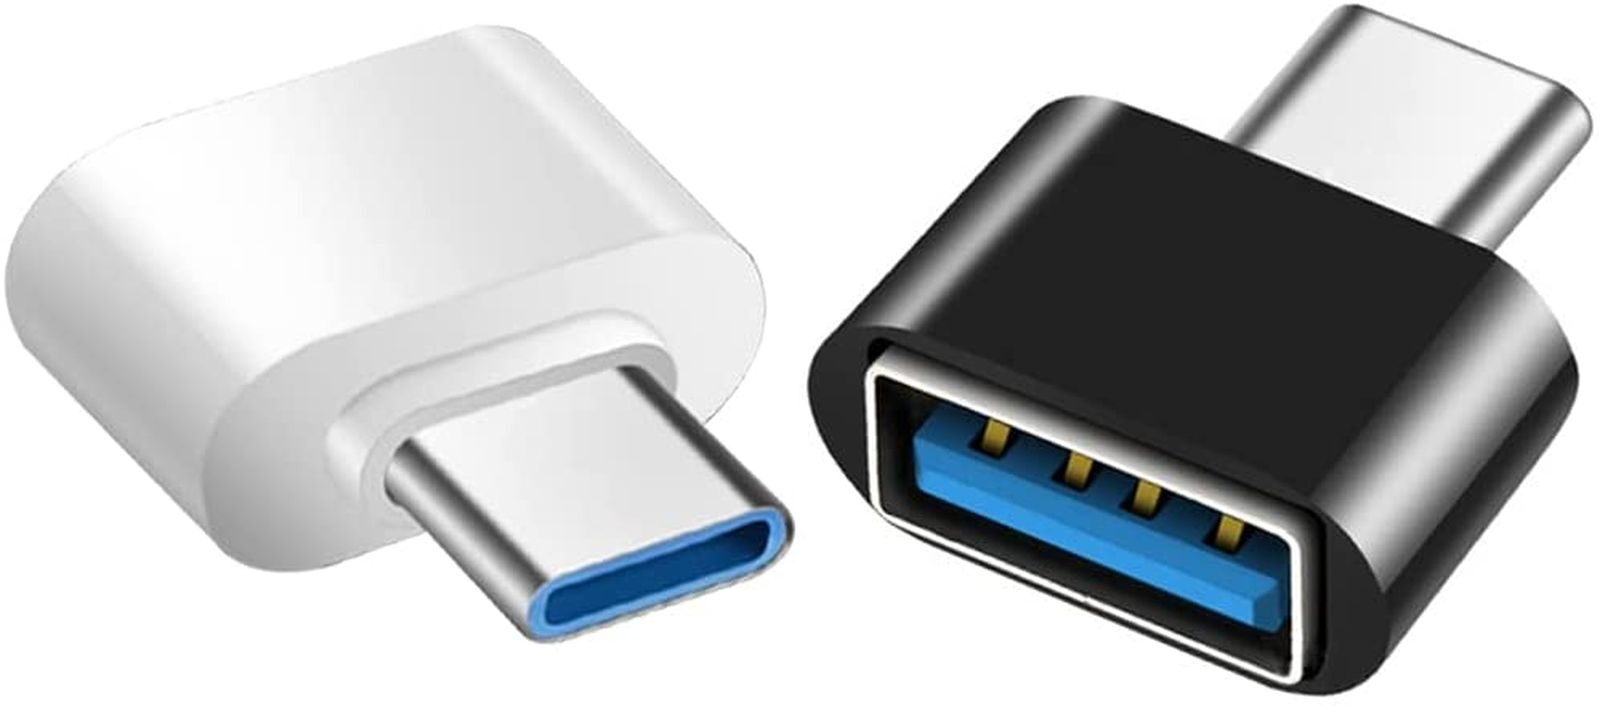 I migliori adattatori USB-C per MacBook, MacBook Pro, Mac Book Air, Mac mini 2018